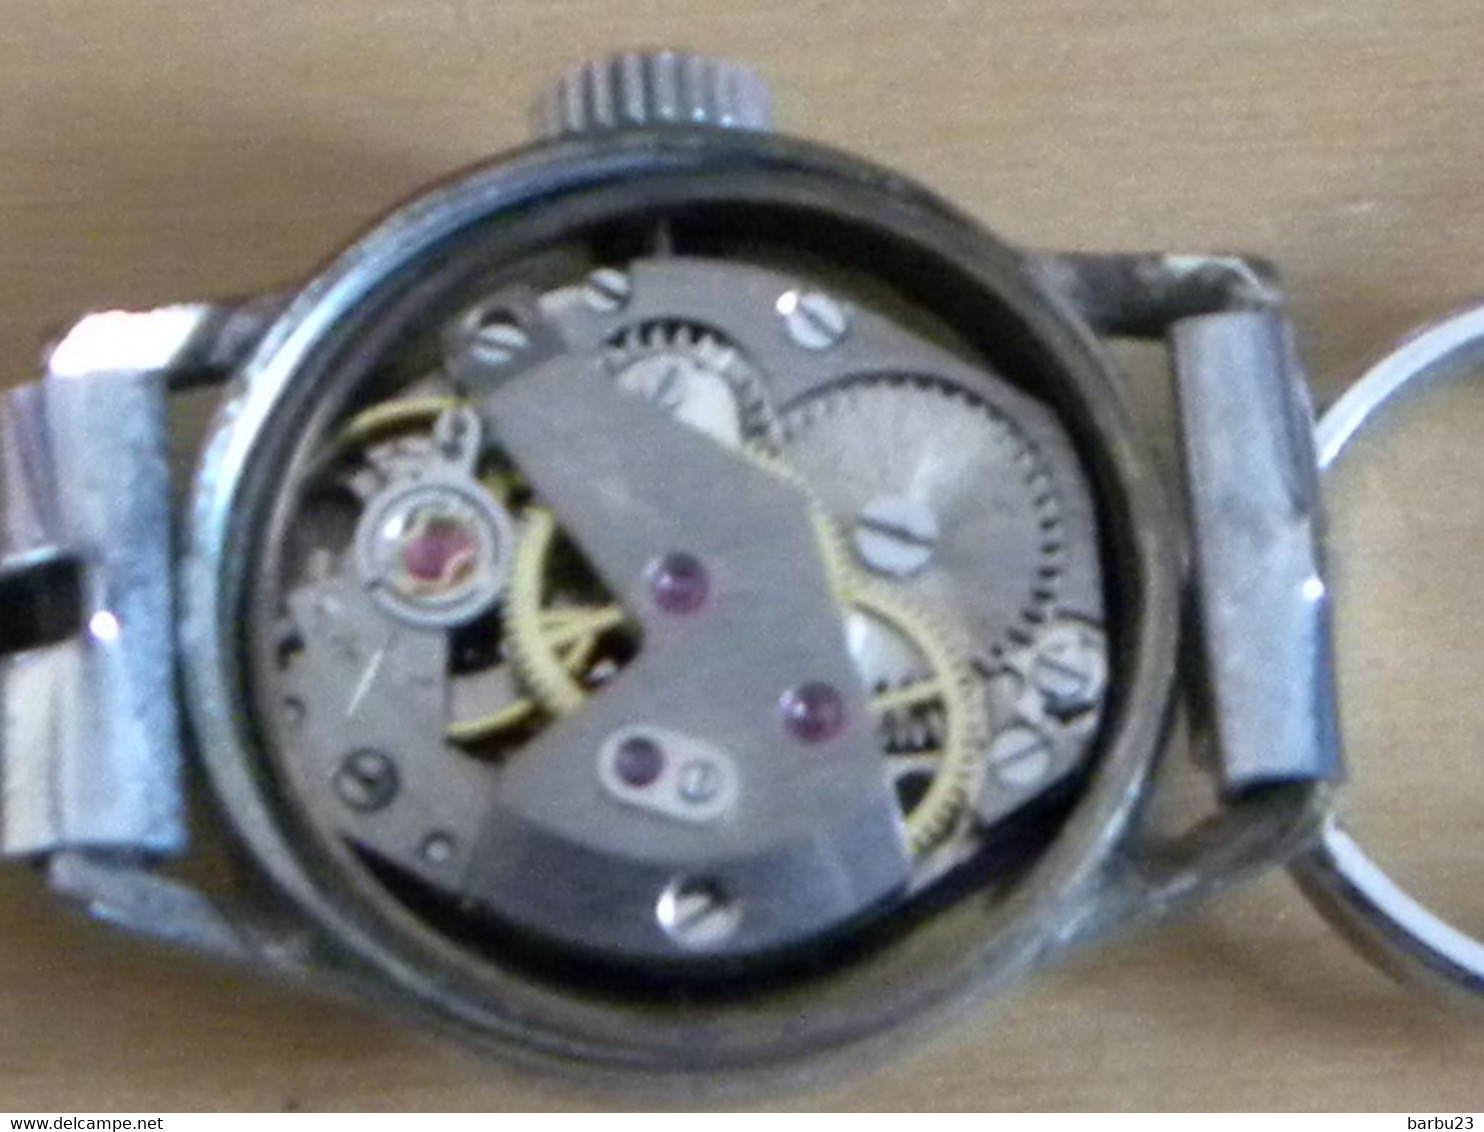 Lot de 2 montres mecaniques (ne fonctionnent plus, mecanisme à revoir)